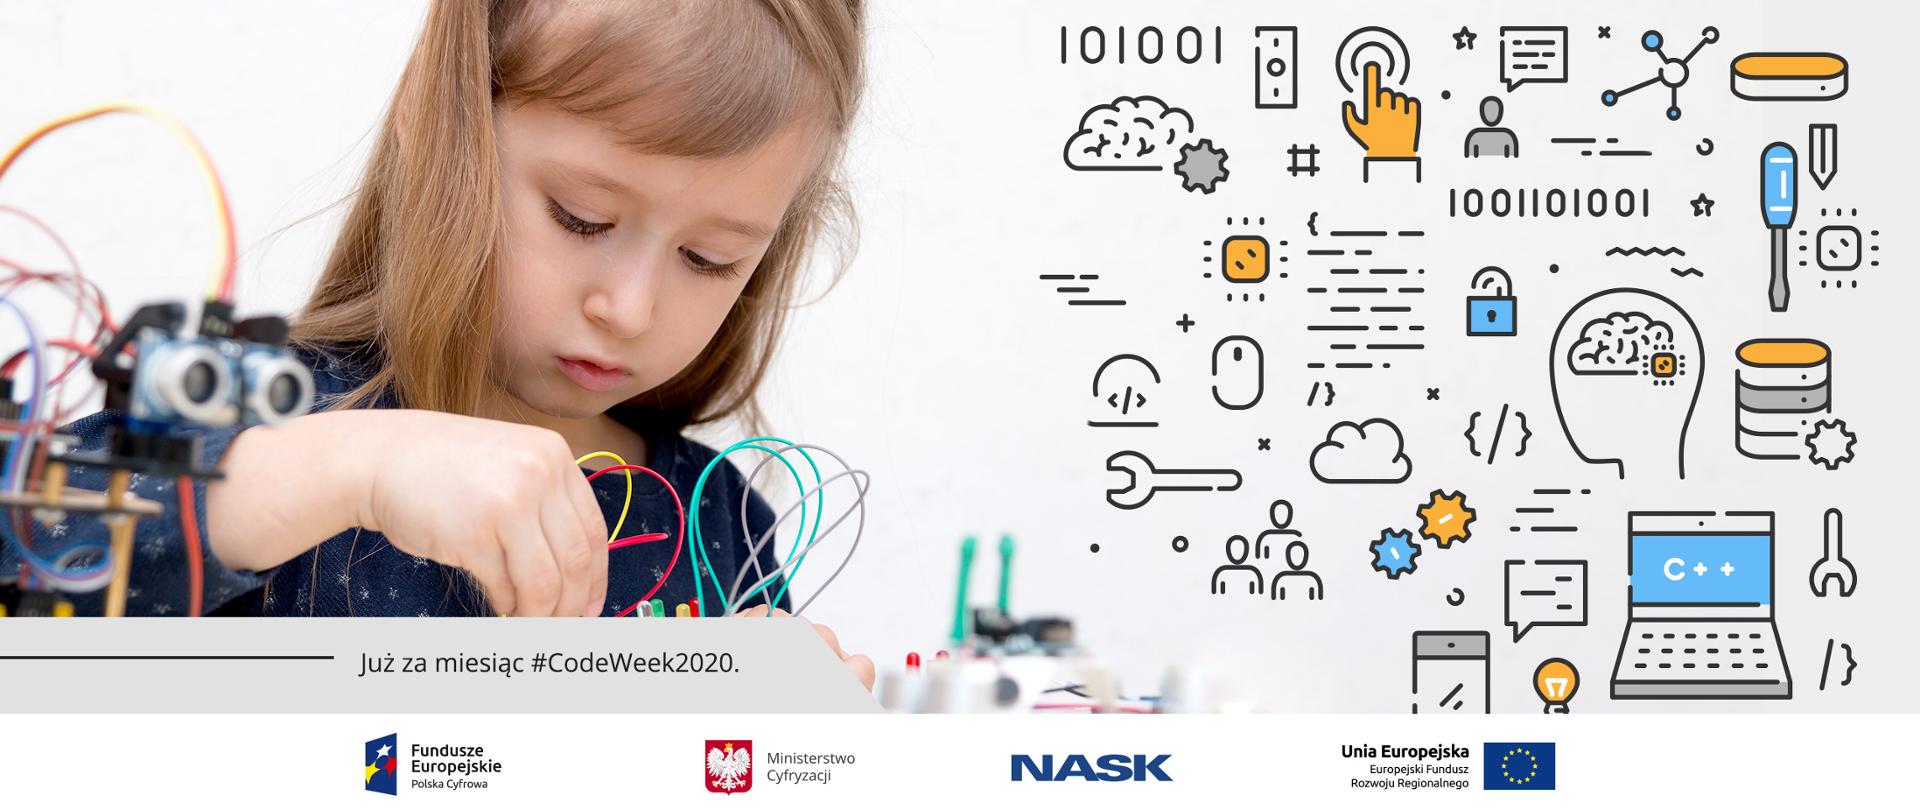 Zdjęcie dziewczynki bawiącej się robotami - przełącza kolorowe kabelki, z prawej strony ikony związane z tworzeniem, myślenie, programowaniem.